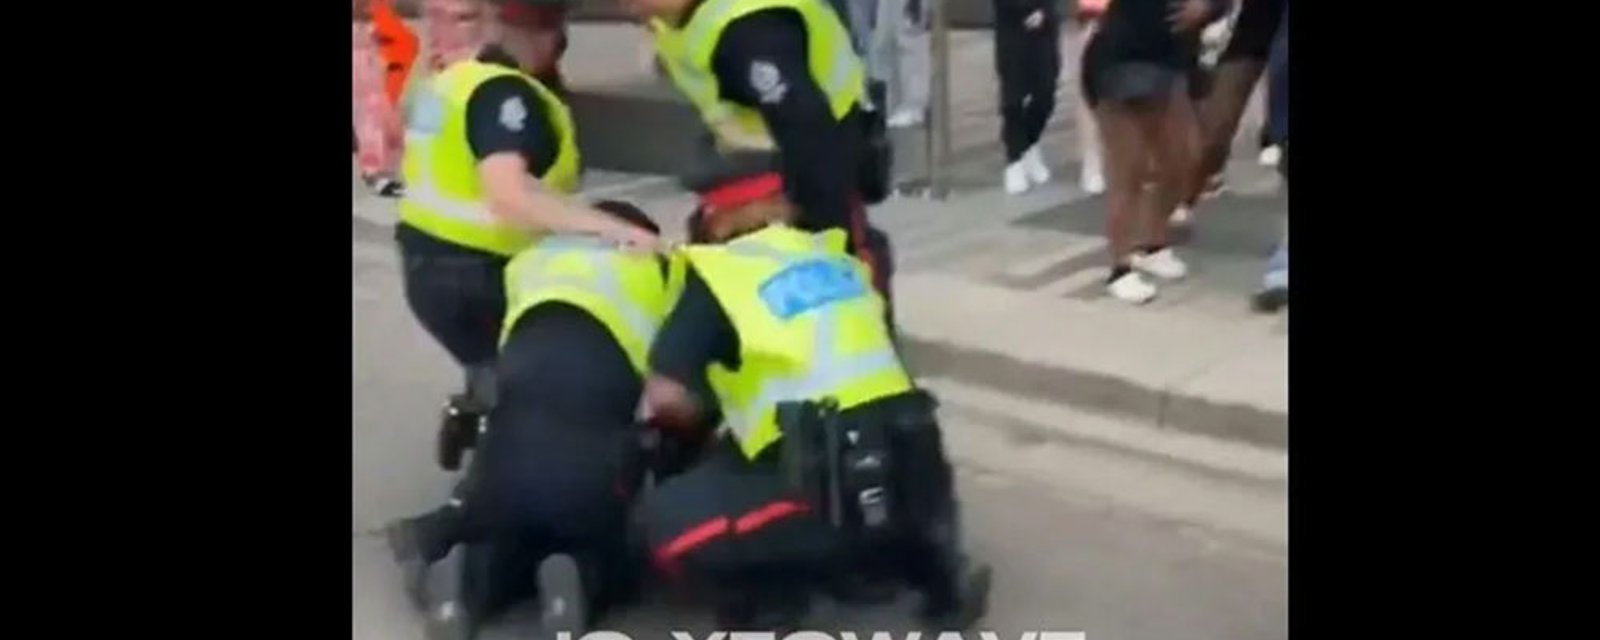 Edmonton police arrest fans after Game 2 brawl